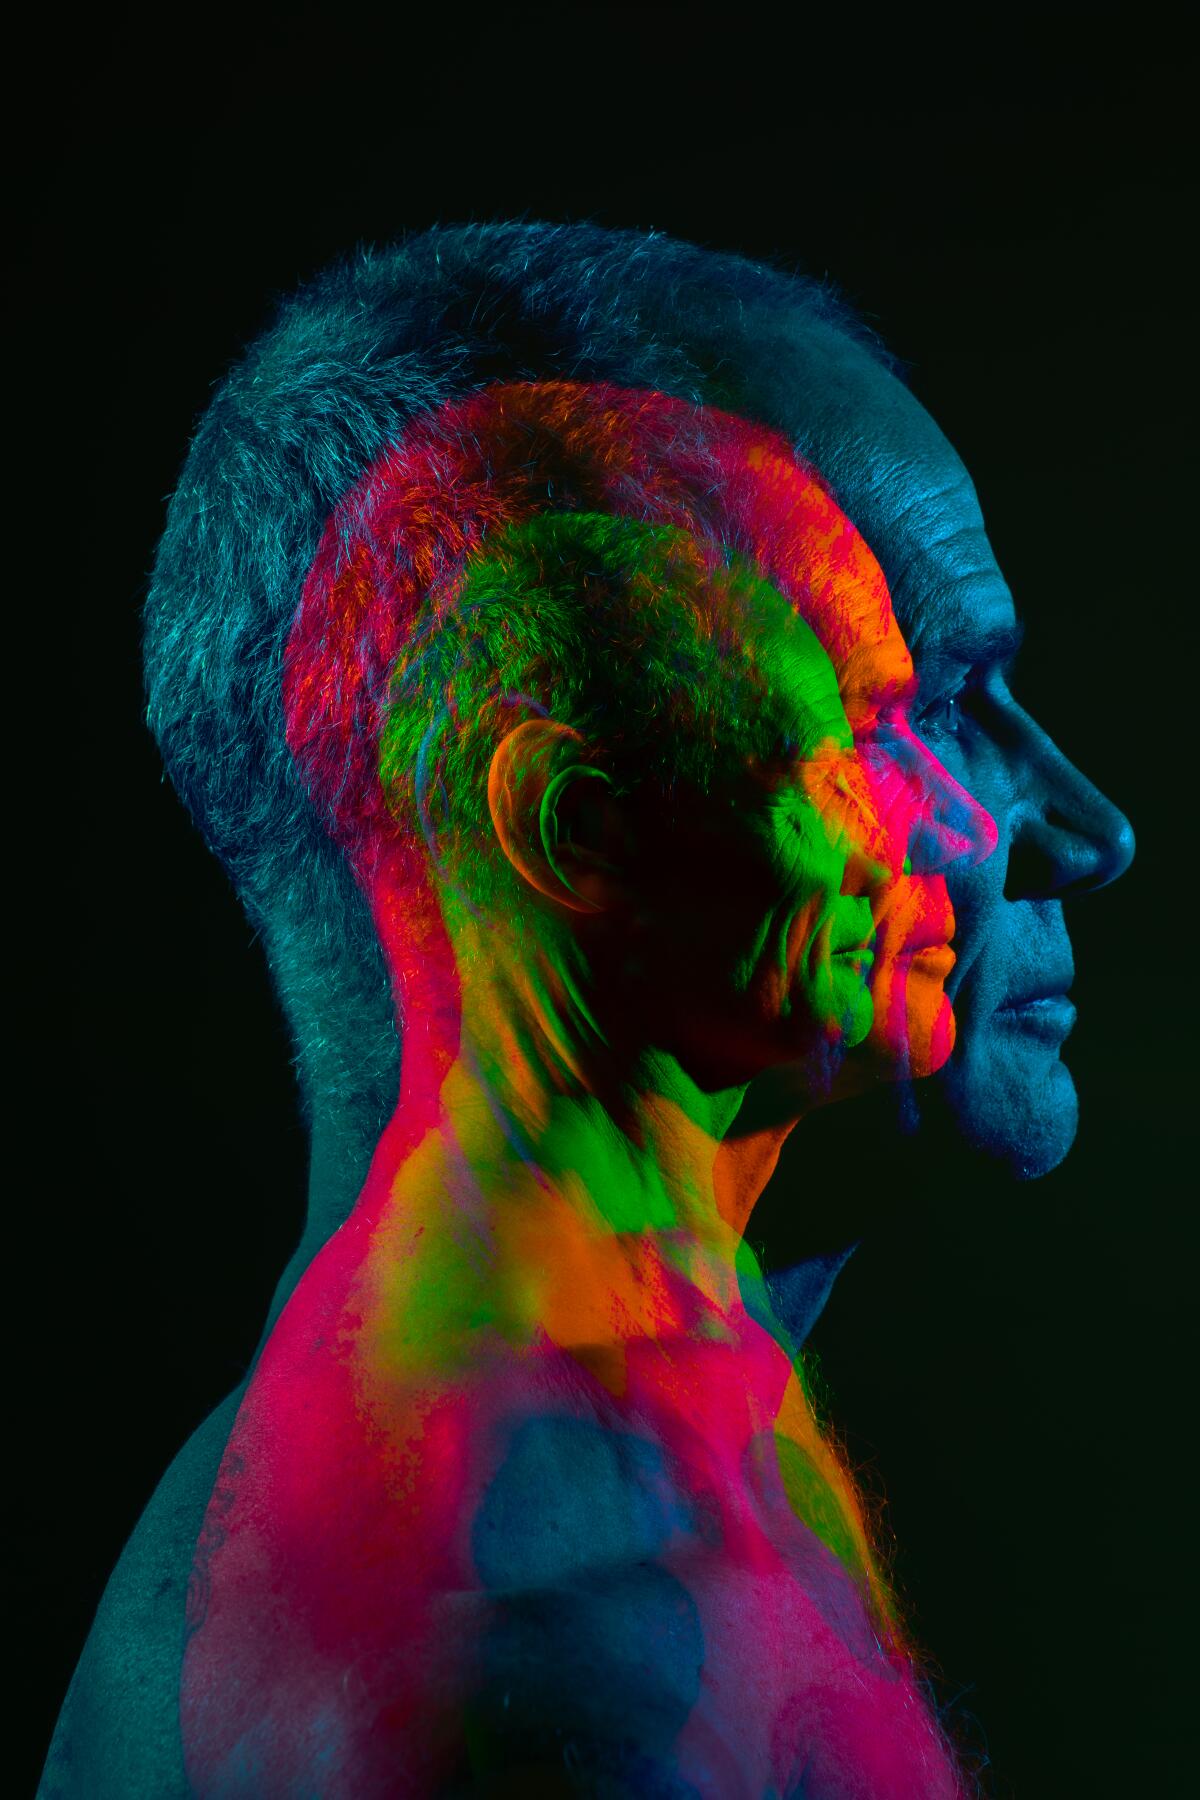 A multiple exposure in multiple colors of Flea's profile.